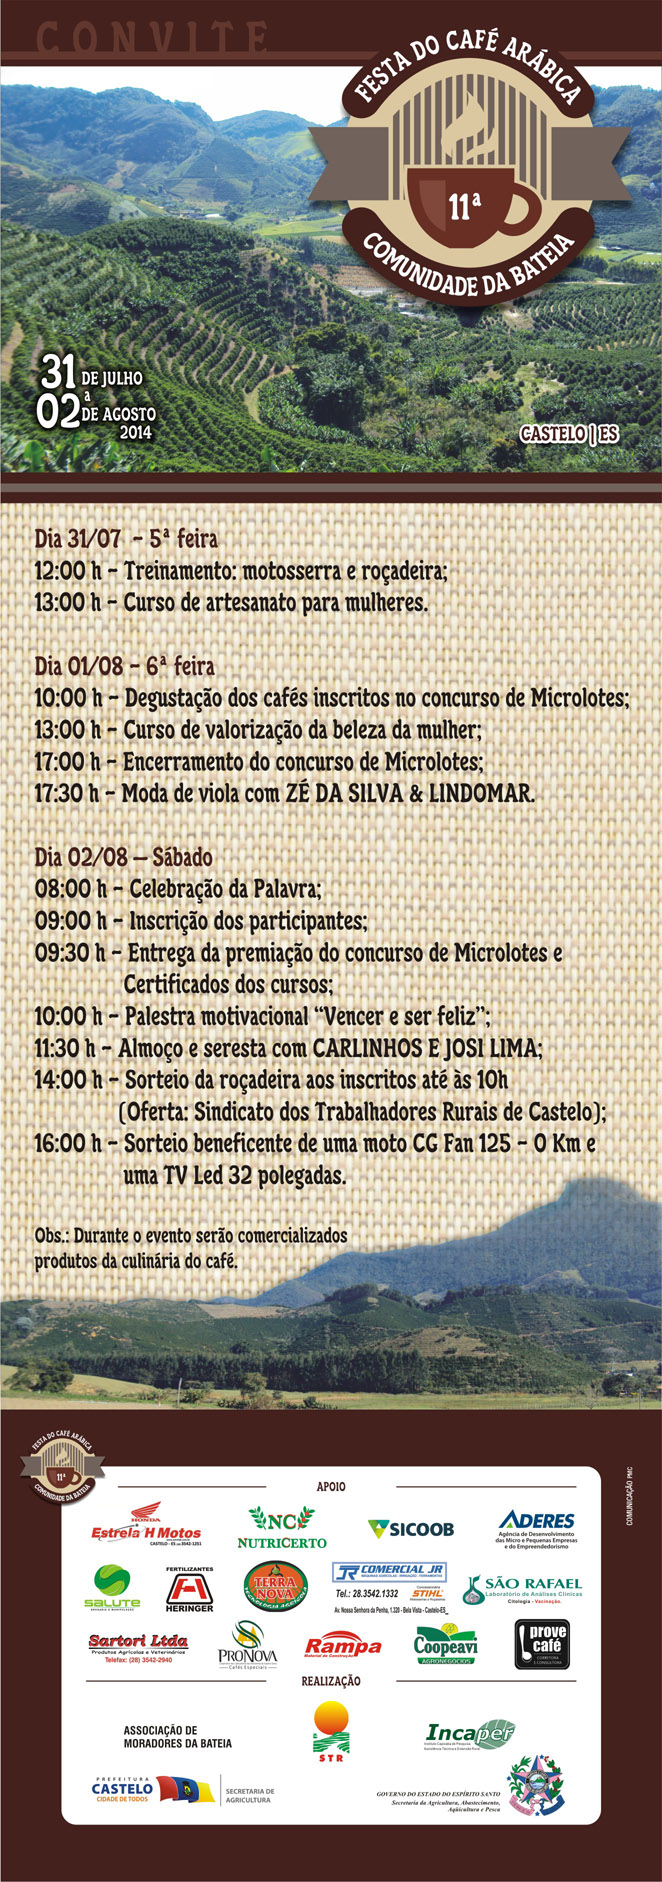 Festa Café Arábica Bateia 20141